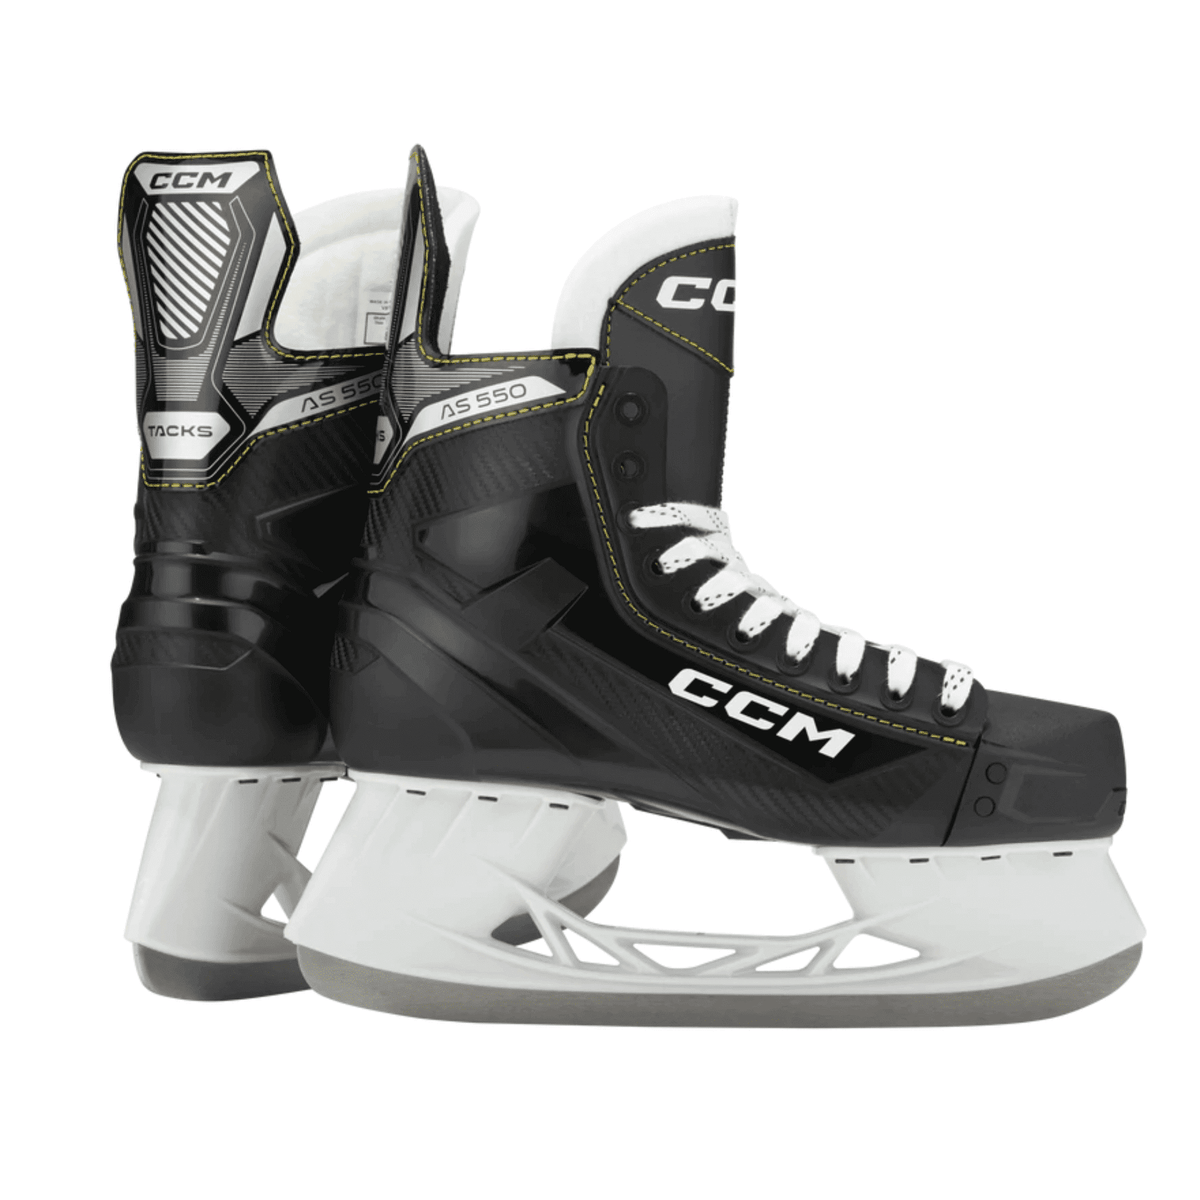 CCM Tacks AS-550 Ice Hockey Skates